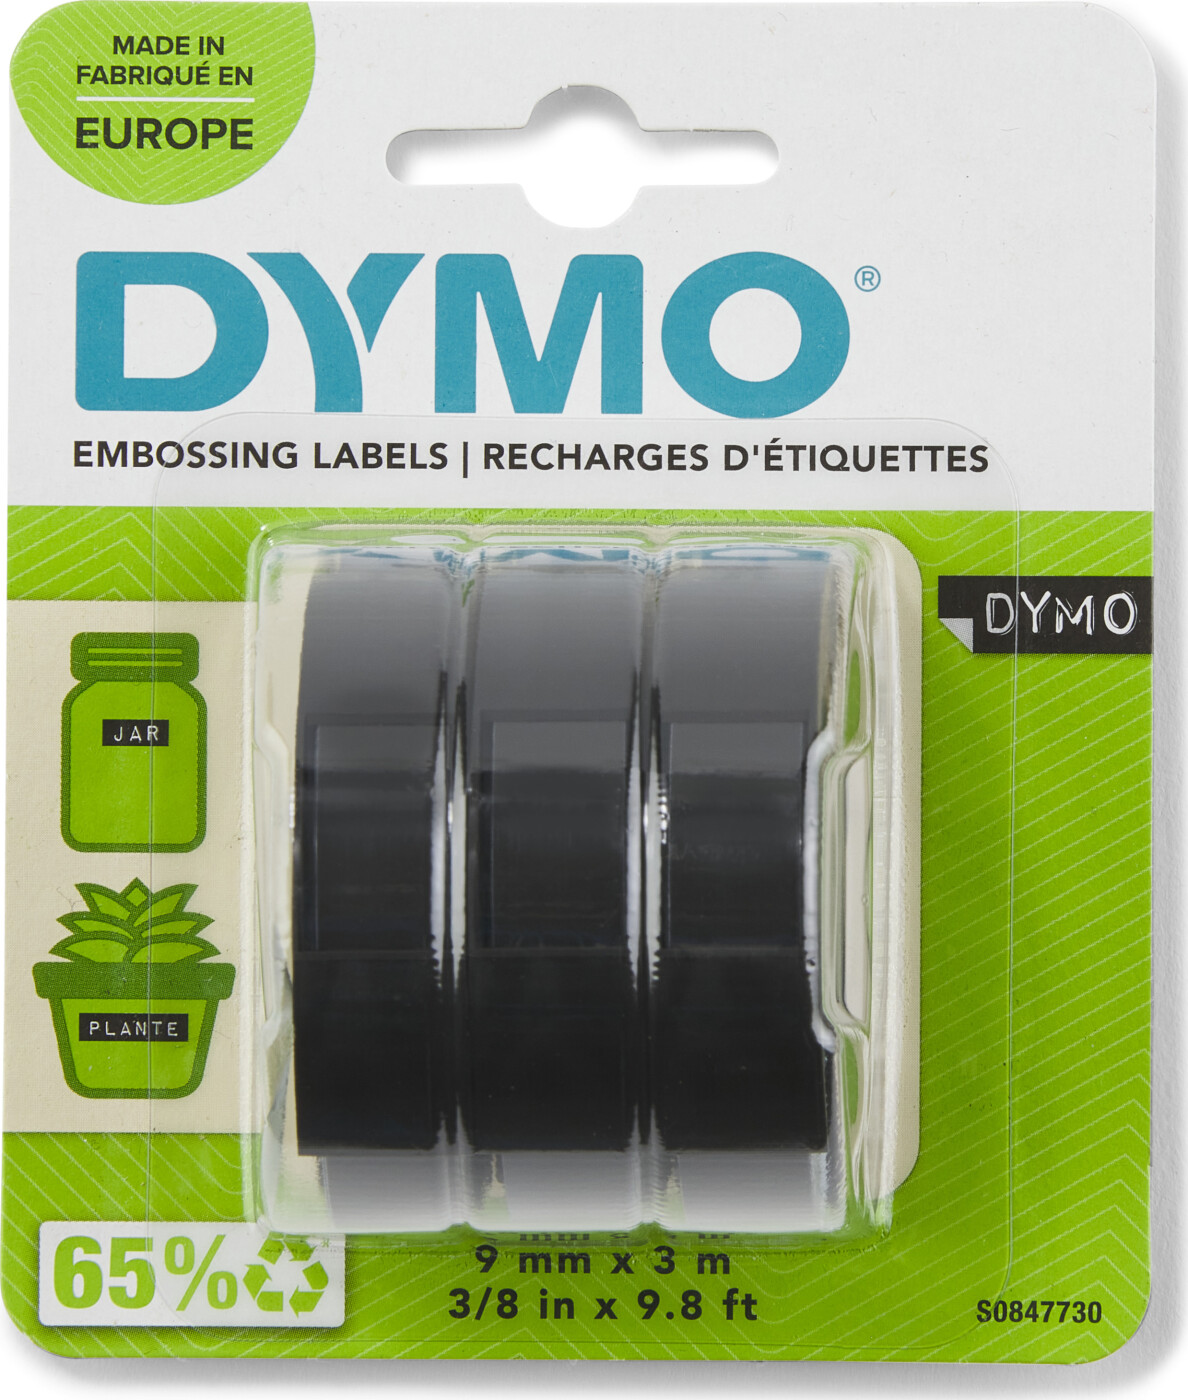 Billede af Dymo - Embossing Labels - 9 Mm X 3 M - 3-pak hos Gucca.dk